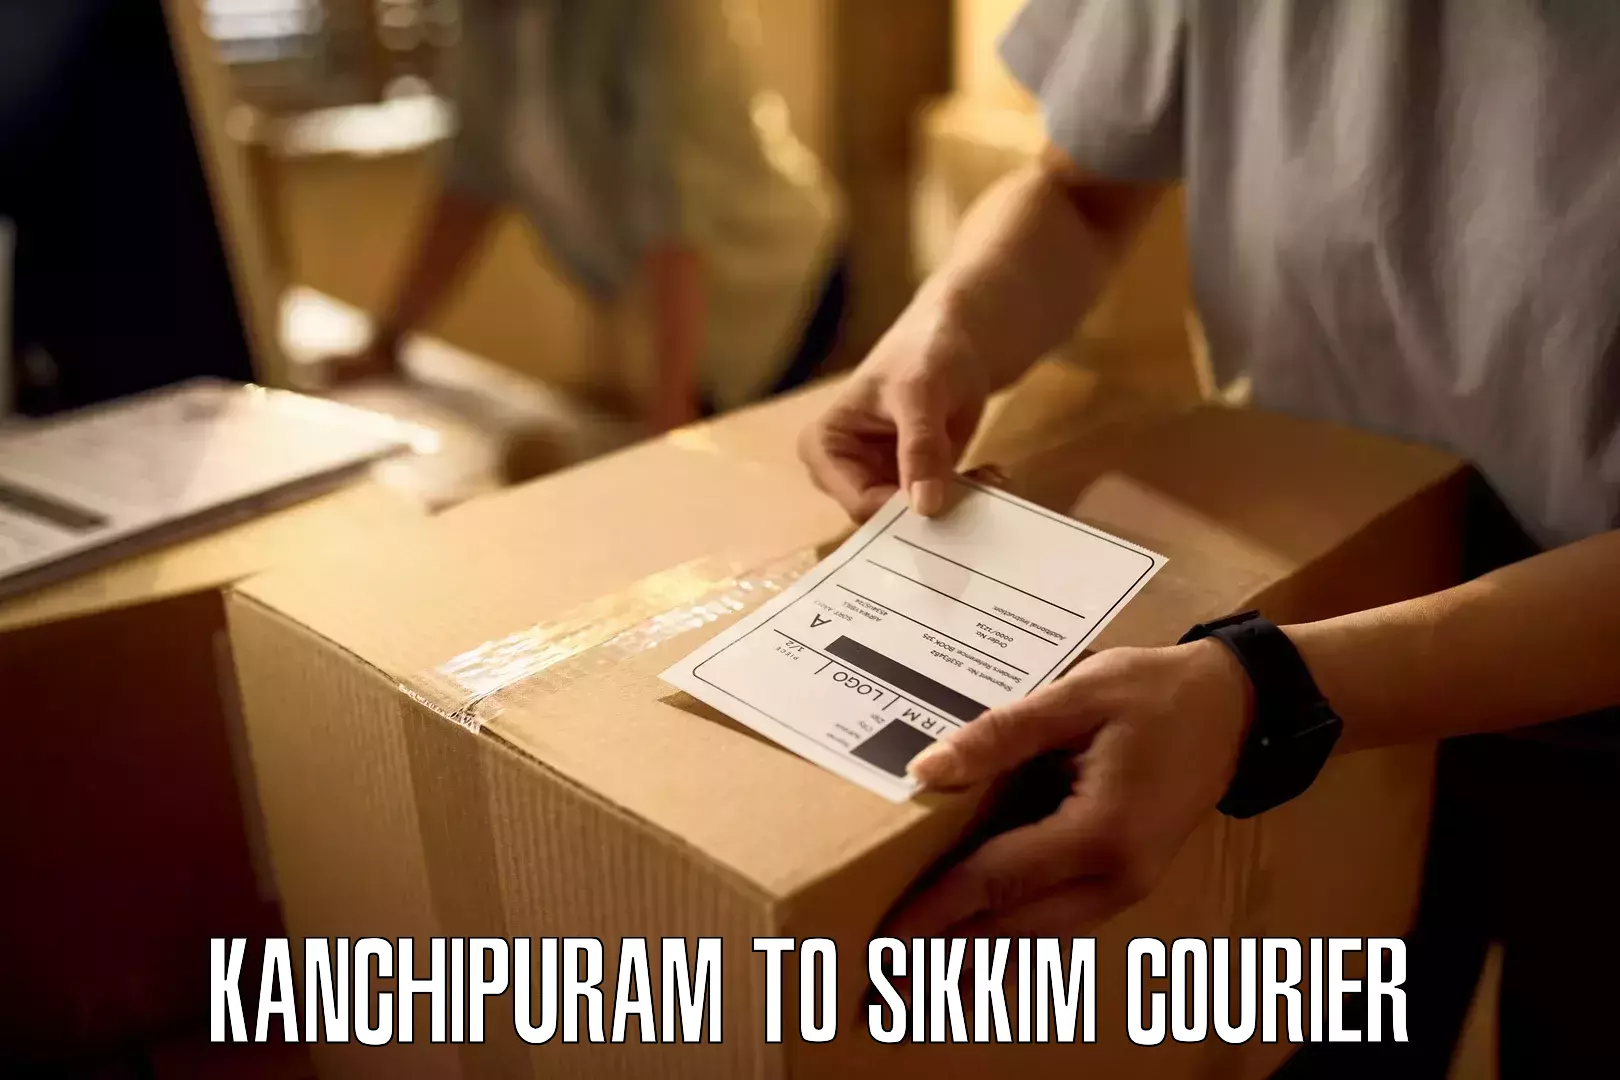 Efficient order fulfillment Kanchipuram to Ravangla